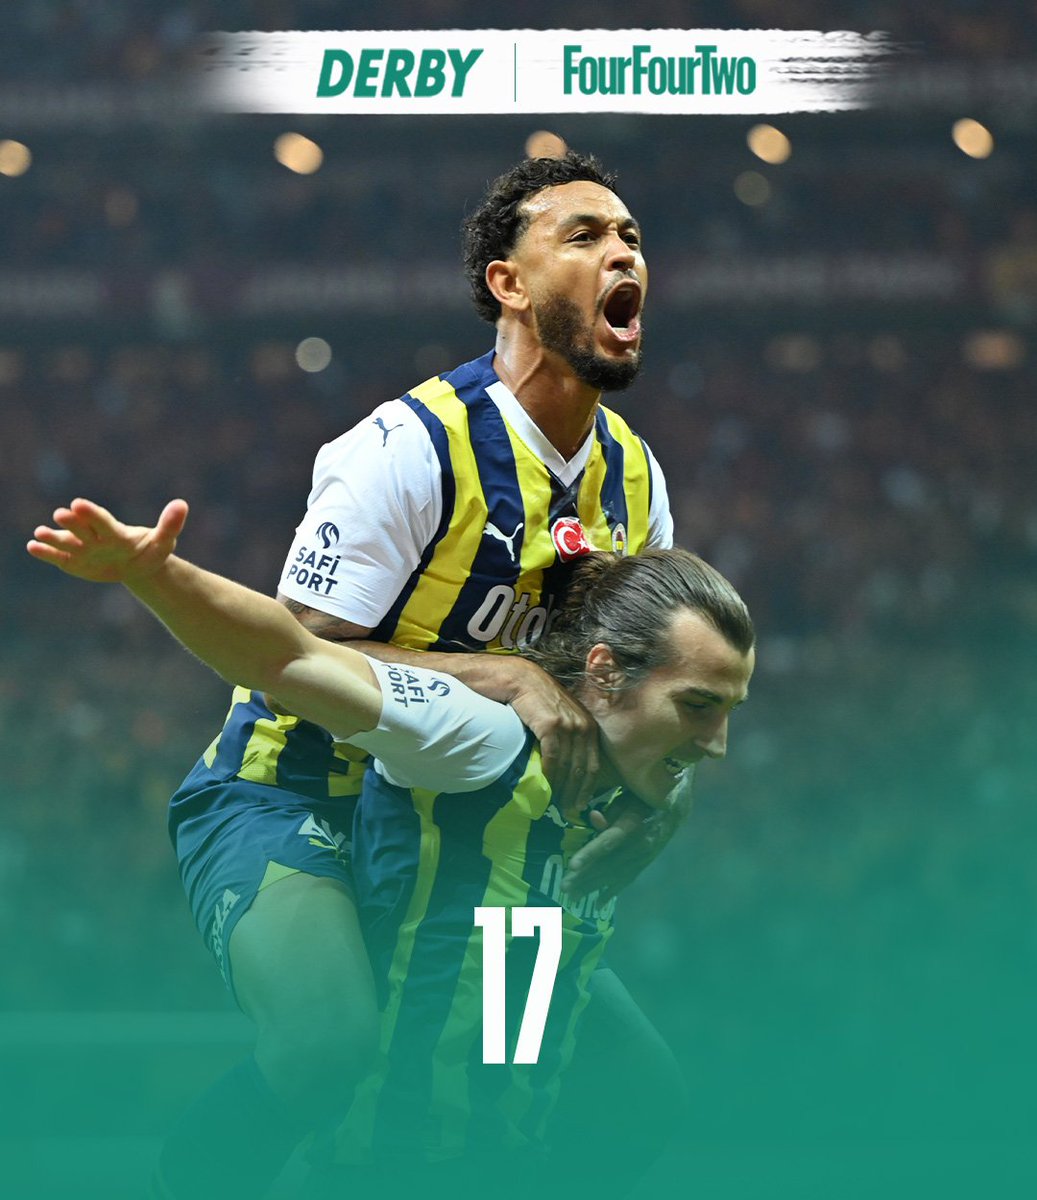 🟡🔵Galatasaray'ı deplasmanda 1-0 mağlup eden Fenerbahçe, rakibinin bu sezonki 17 maçlık galibiyet serisine son verdi!

#VerbiDerby